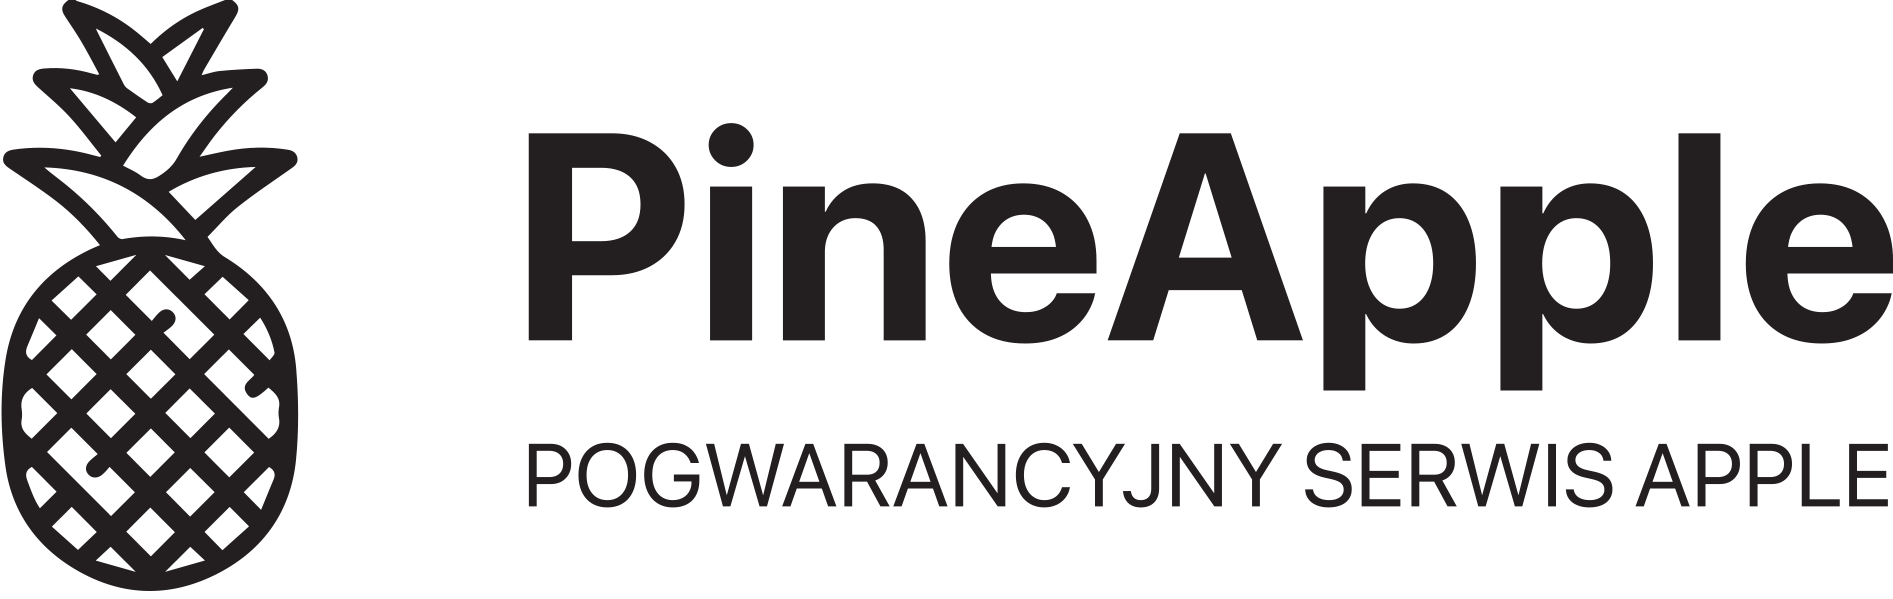  PineApple Serwis Pogwarancyjny Urządzen Apple 